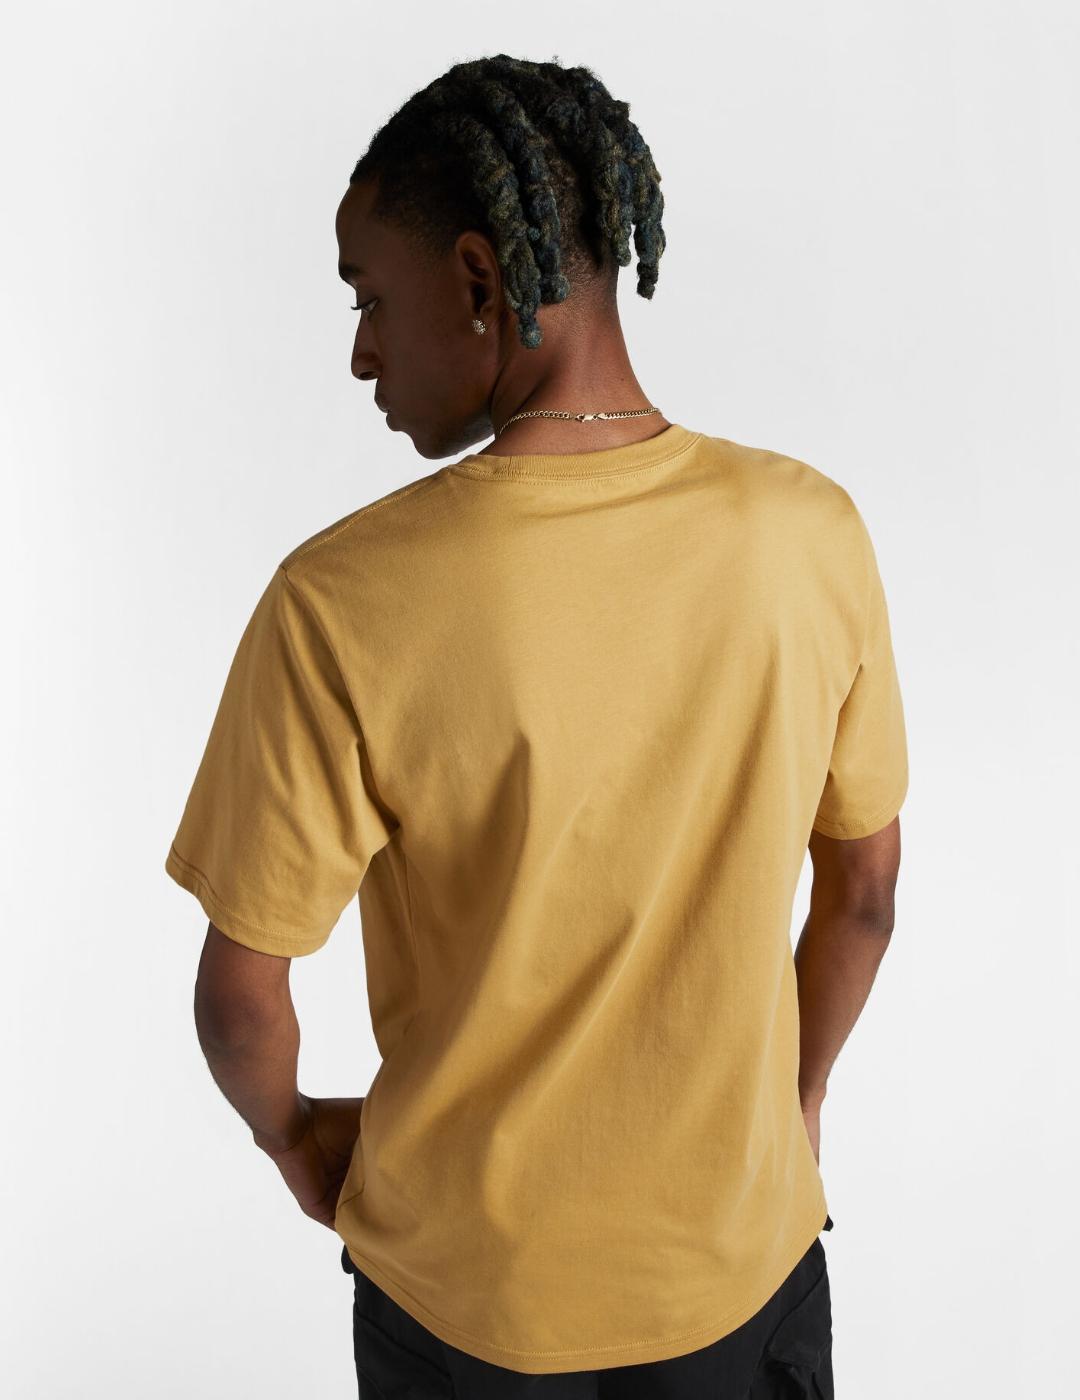 Camisetas Converse para hombre color mostaza